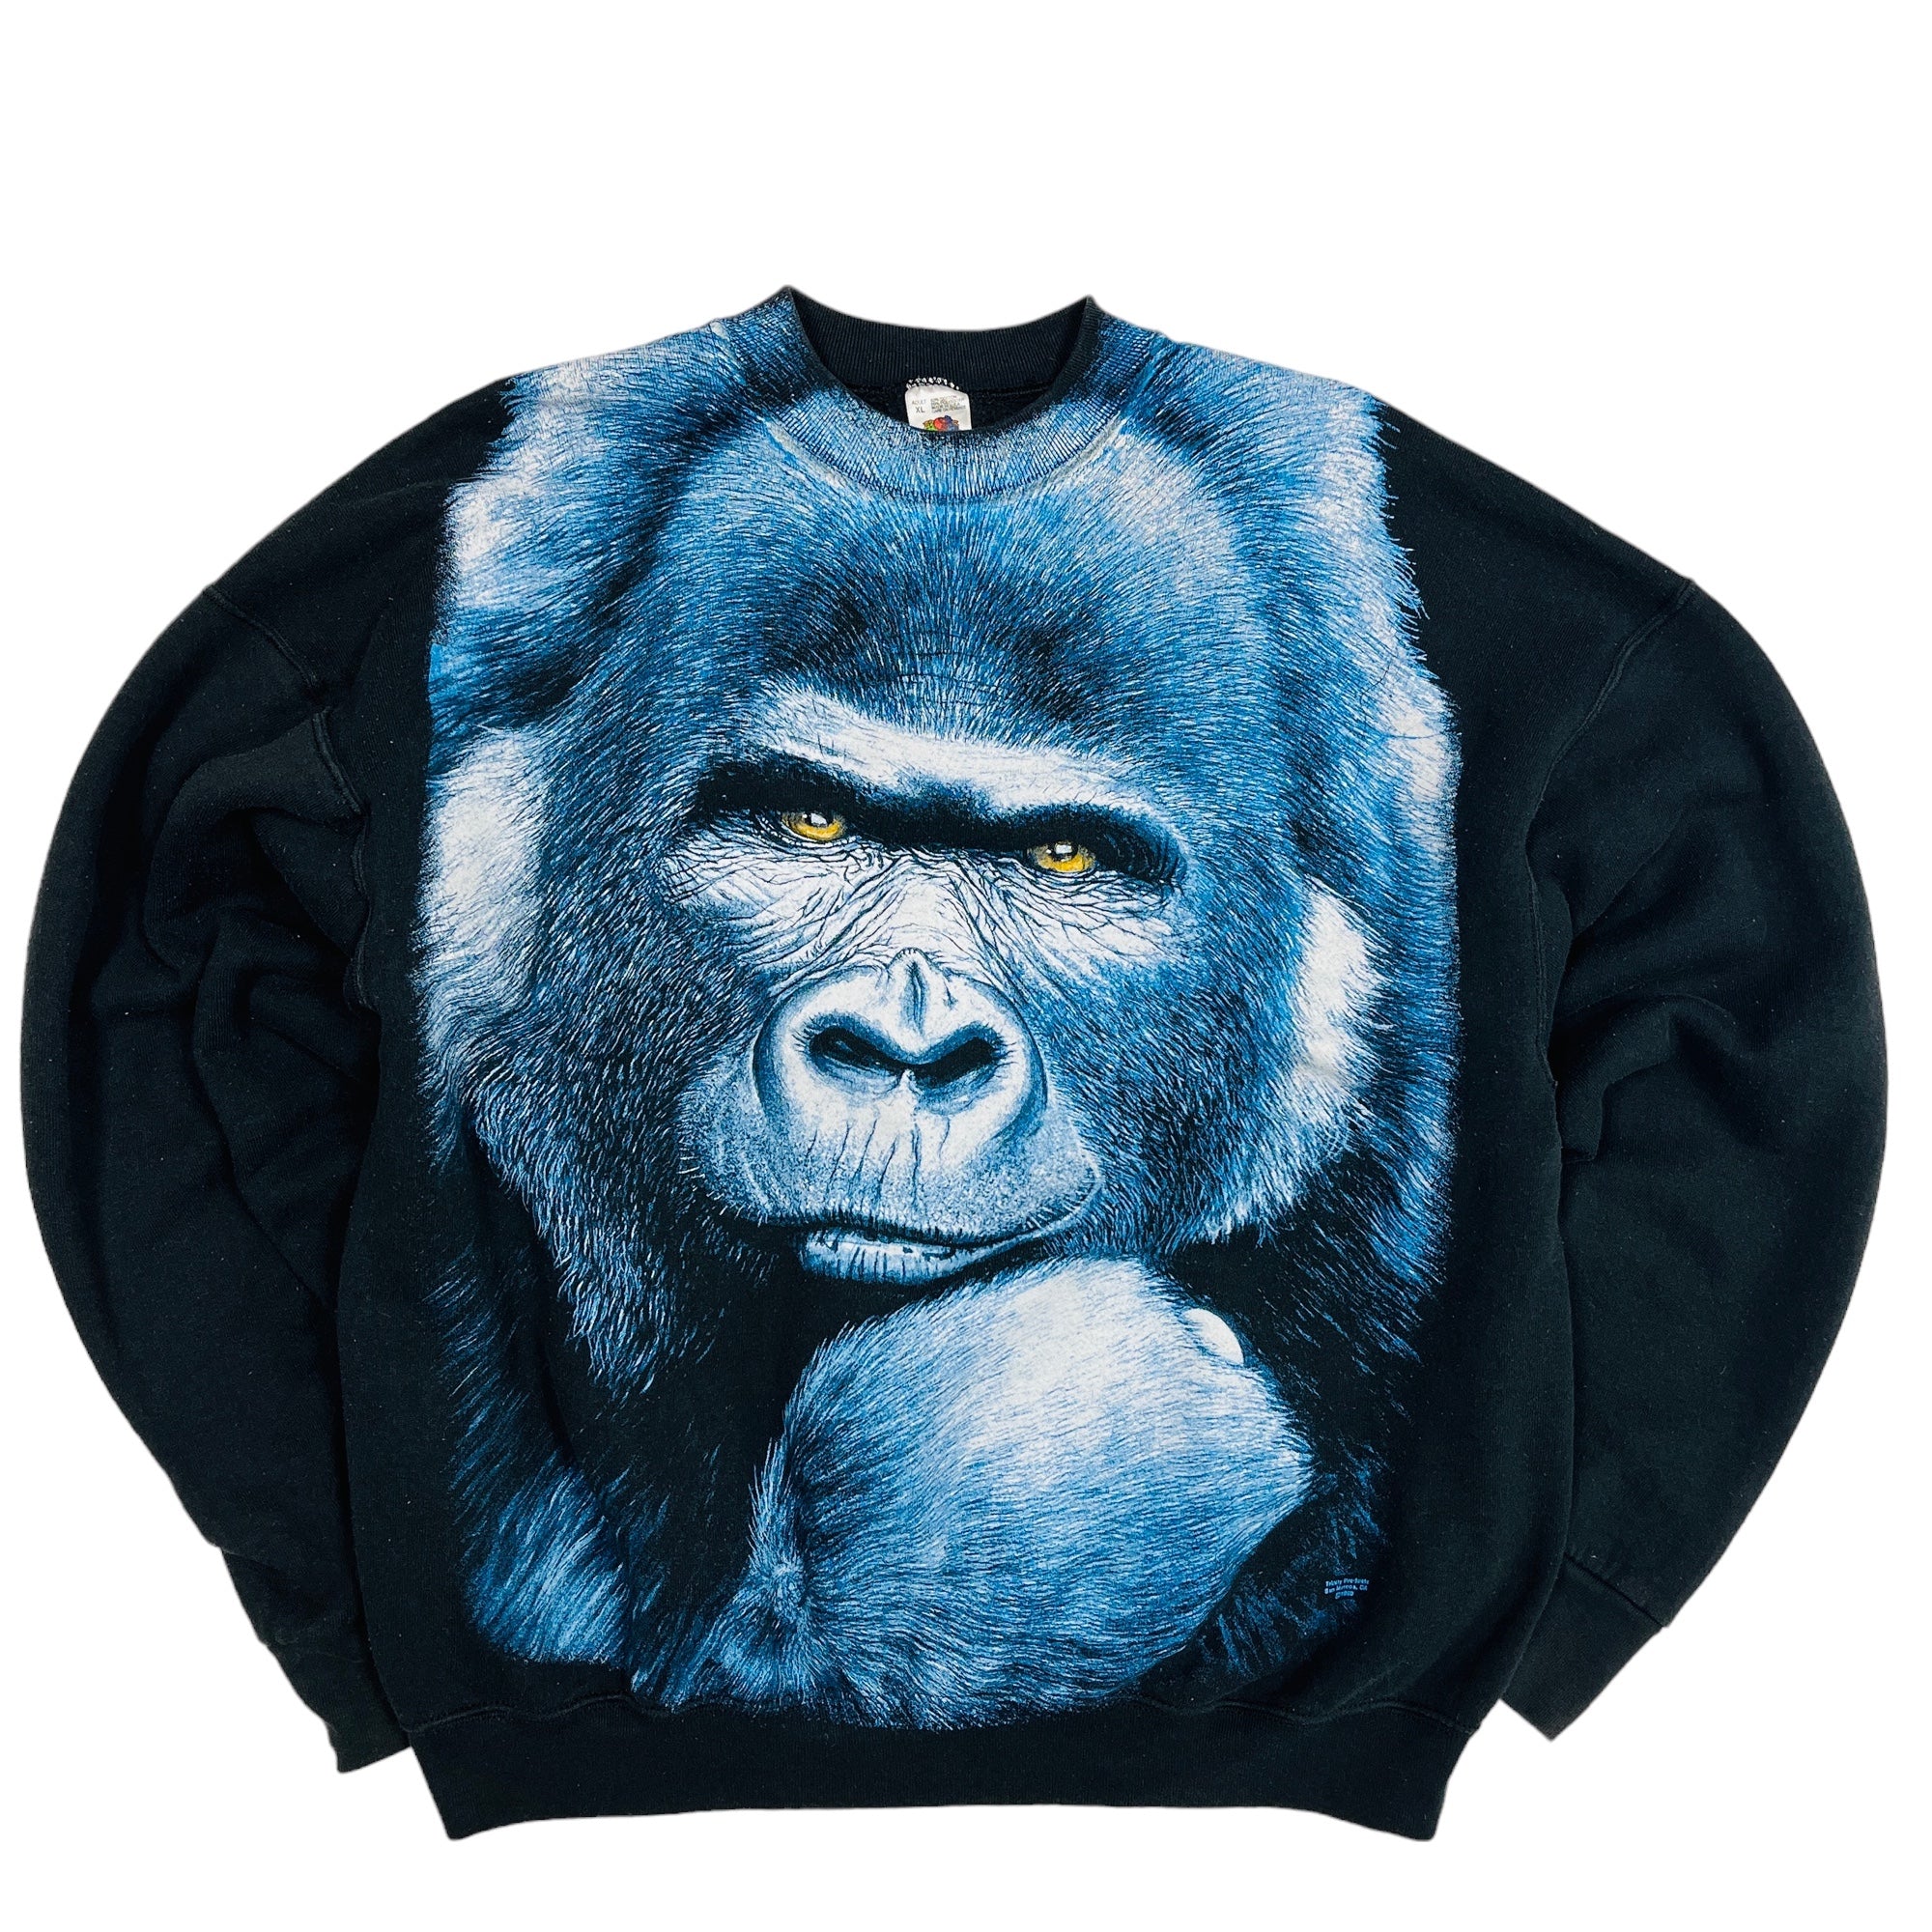 90's Gorilla Graphic Sweatshirt - XL